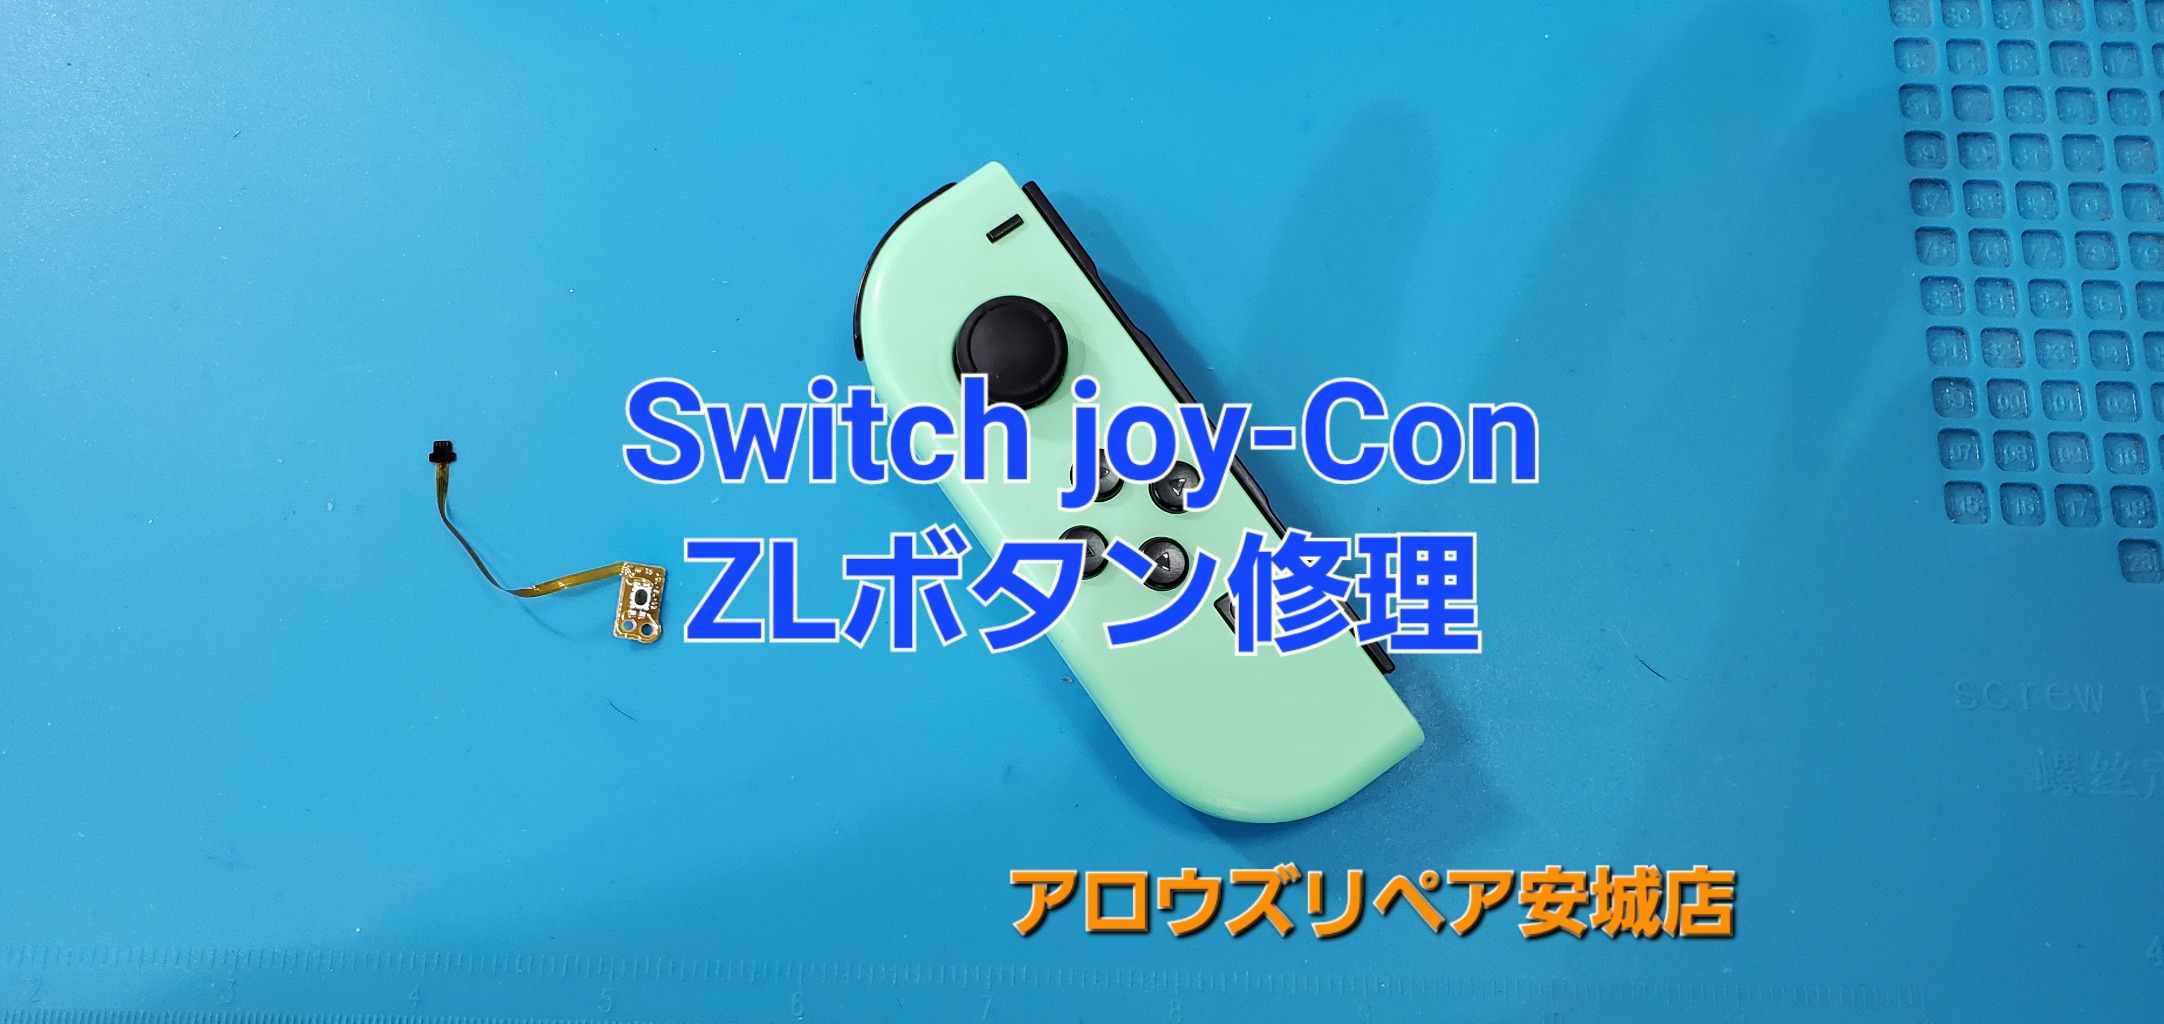 岡崎市よりご来店、Switch Joy-Con ZLボタン修理のご紹介。|安城駅徒歩3分|iPhone・Switch・iPad修理ならアロウズリペア安城がおすすめ！JR安城駅から徒歩3分、データそのまま即日修理、Switch修理もお任せ下さい。お客様のお悩み解決致します。